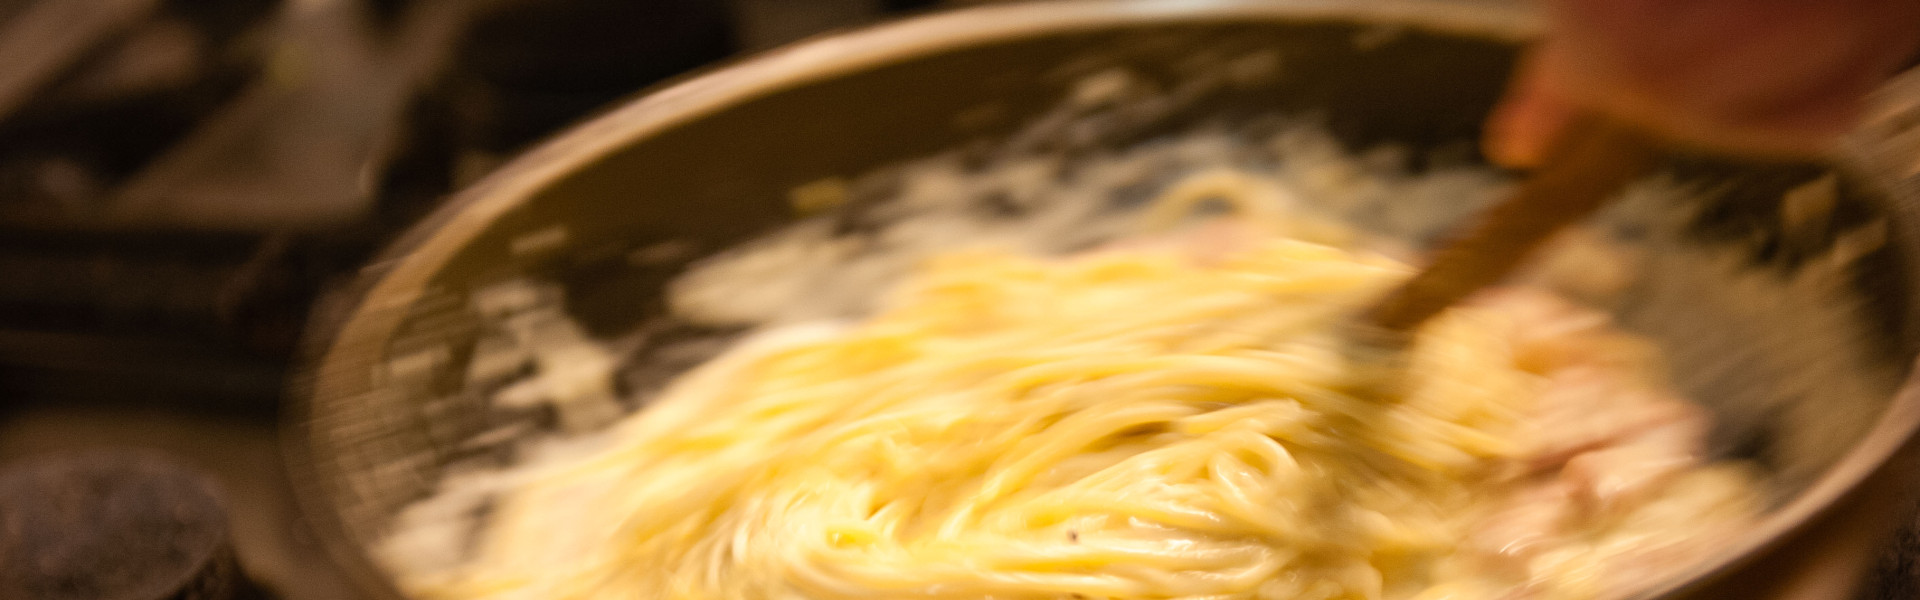 ristorante-alfredo-spaghetti-carbonara-pfanne